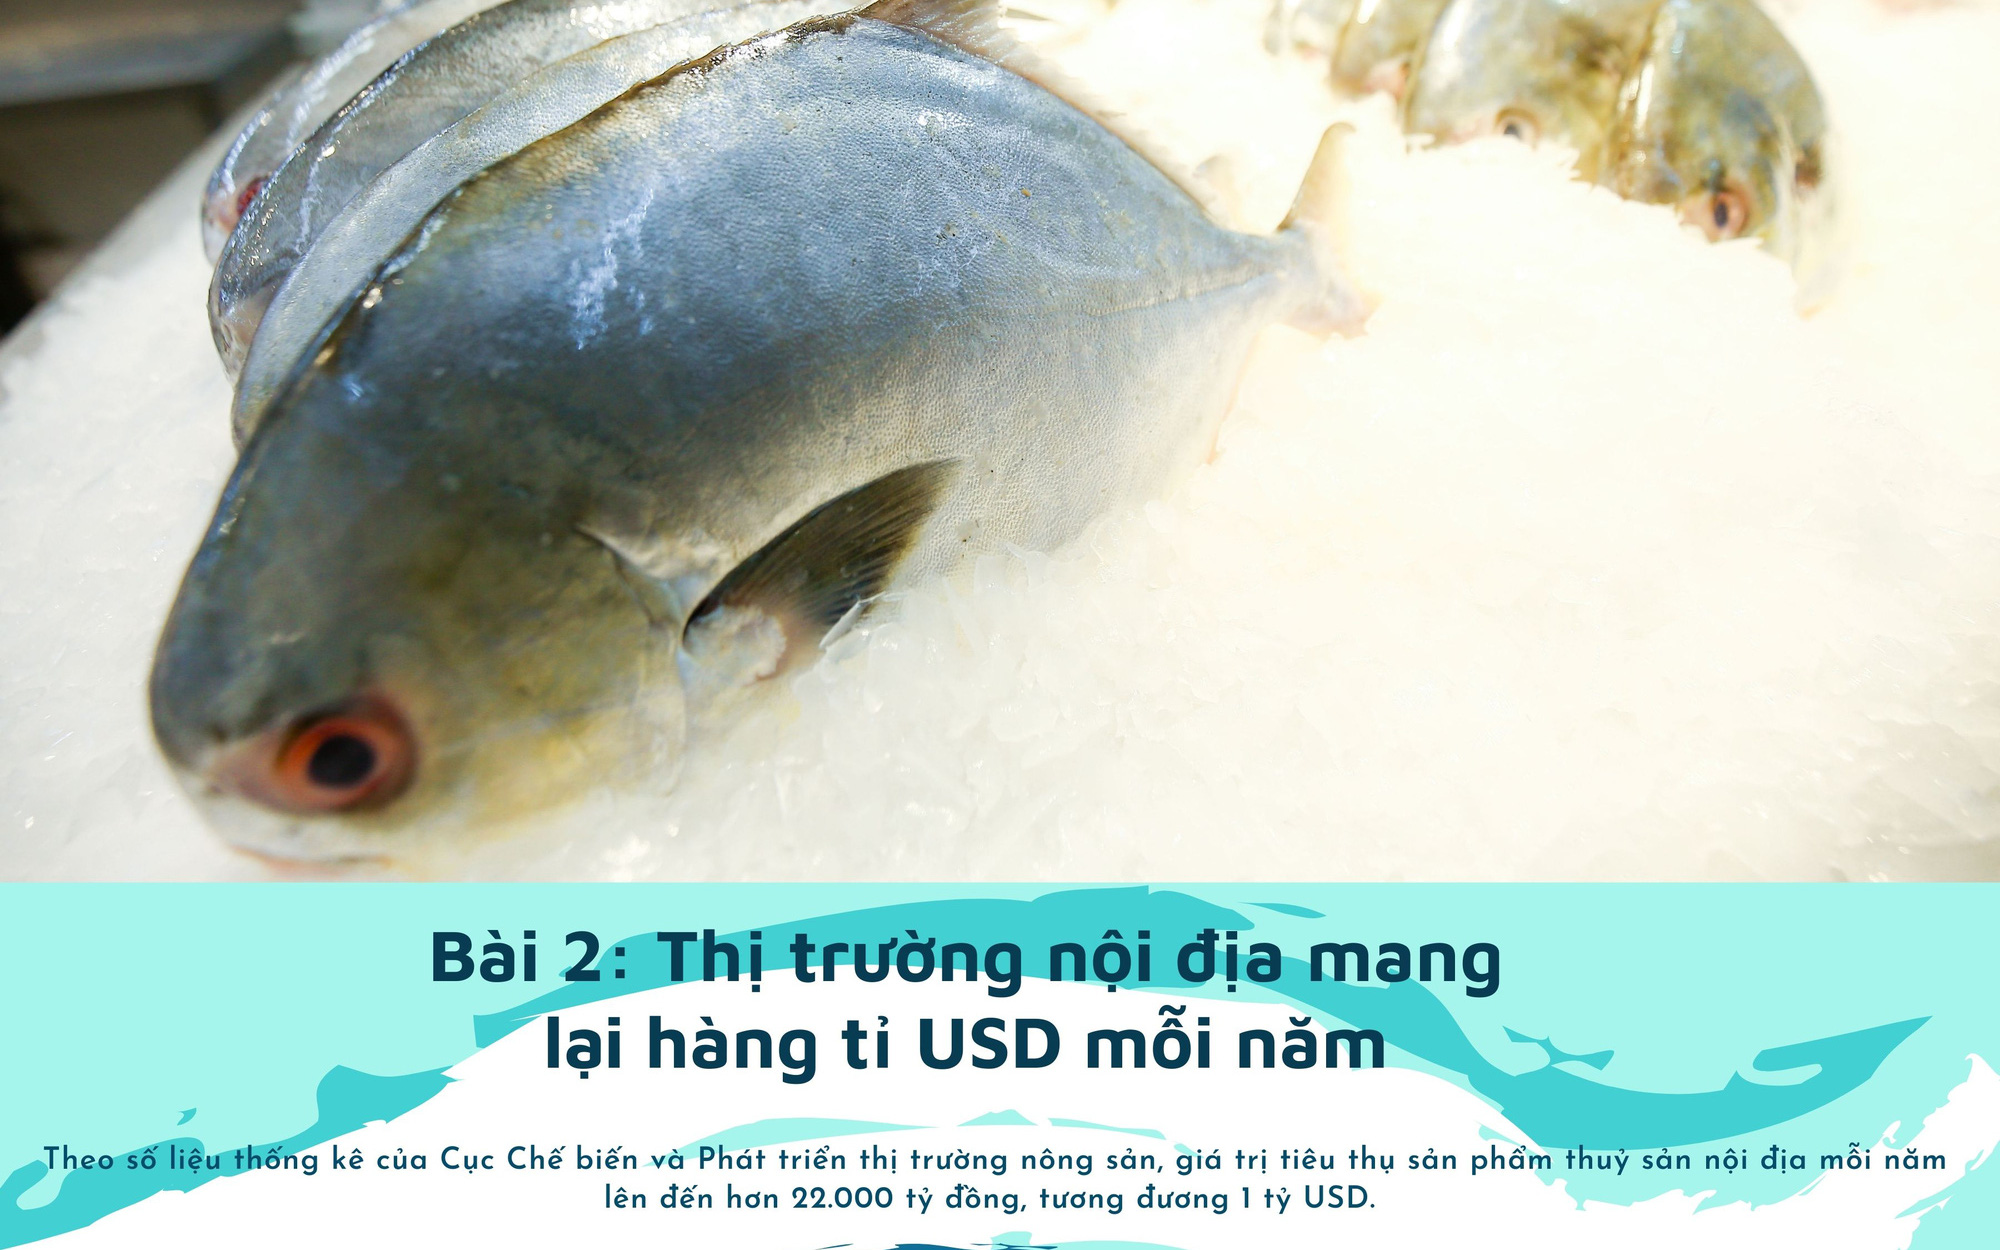 Thị trường nội địa mang lại hàng tỉ USD mỗi năm cho ngành chế biến thủy sản, đang bị "lãng quên"